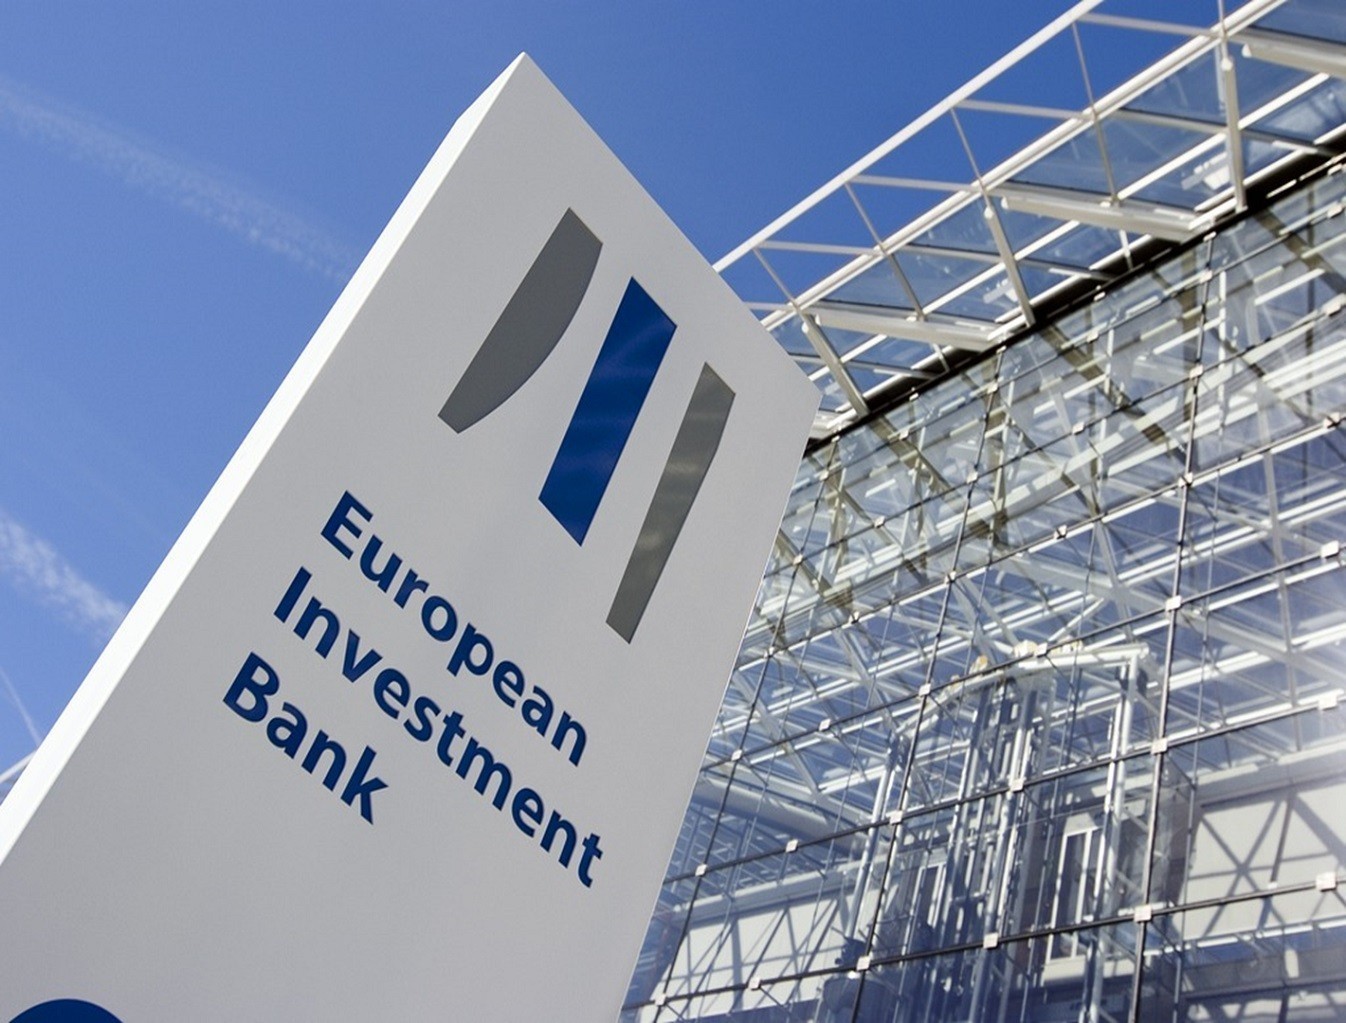 Ευρωπαϊκή Τράπεζα Επενδύσεων: Έρχονται νέες χρηματοδοτήσεις για μικρομεσαίες επιχειρήσεις και ενεργειακά έργα στην Ελλάδα (πίνακες)